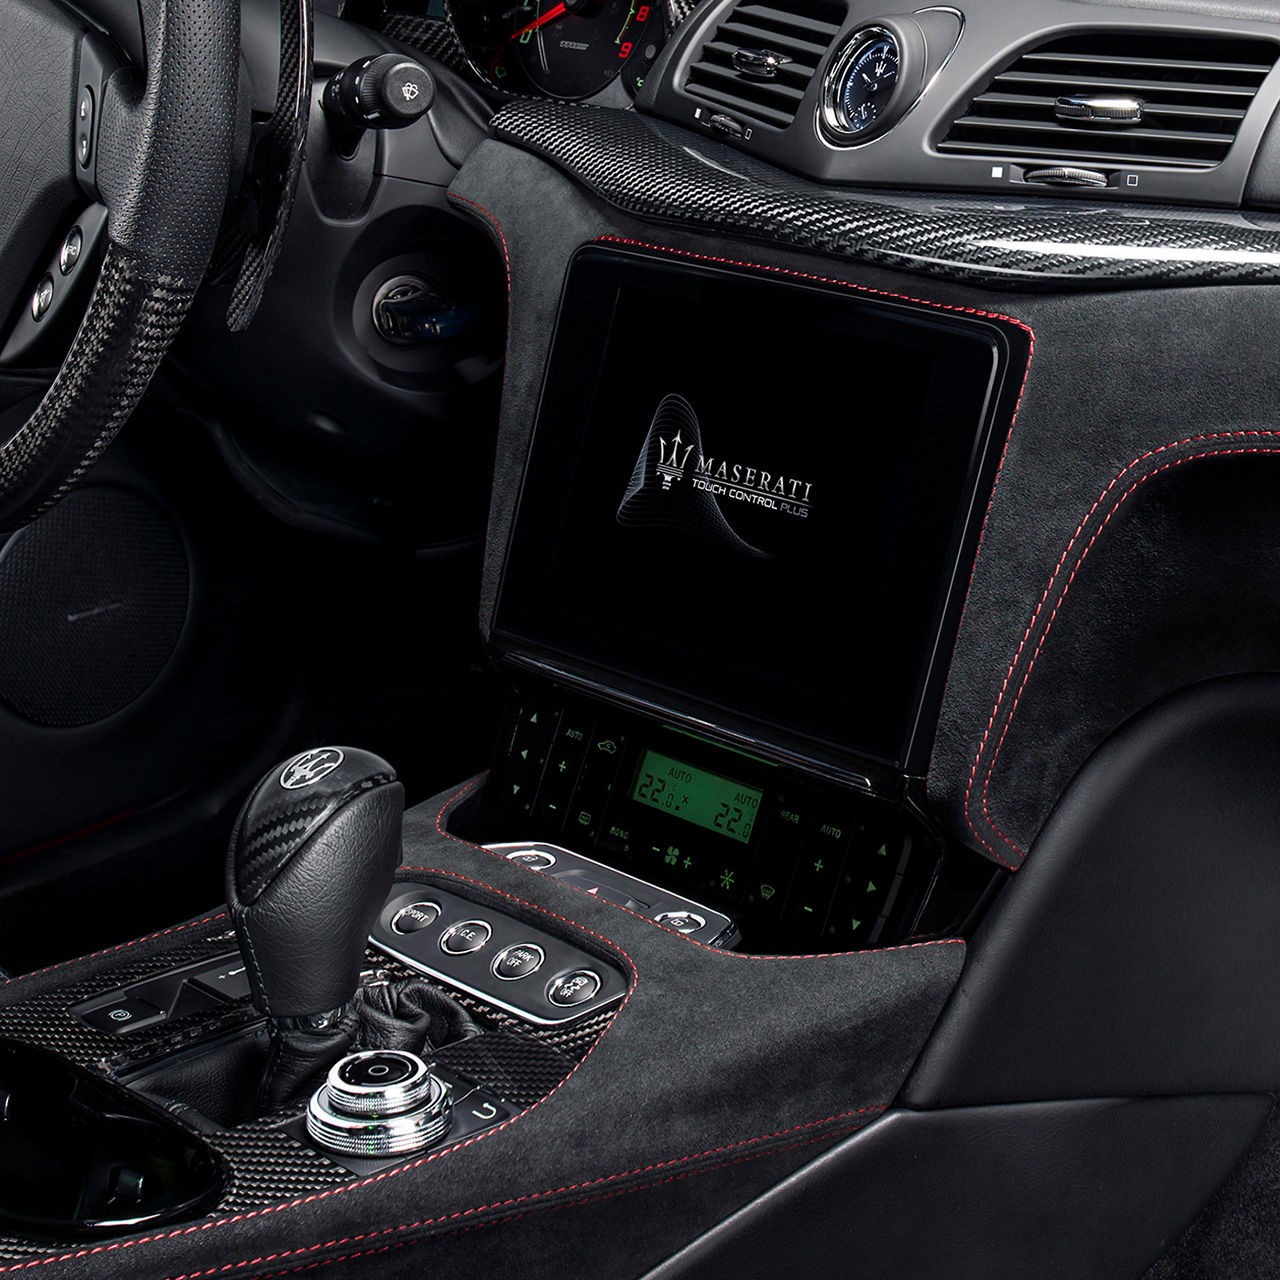 Interni Maserati GranTurismo - Dettaglio del display e del cambio - Infotainment e connettività